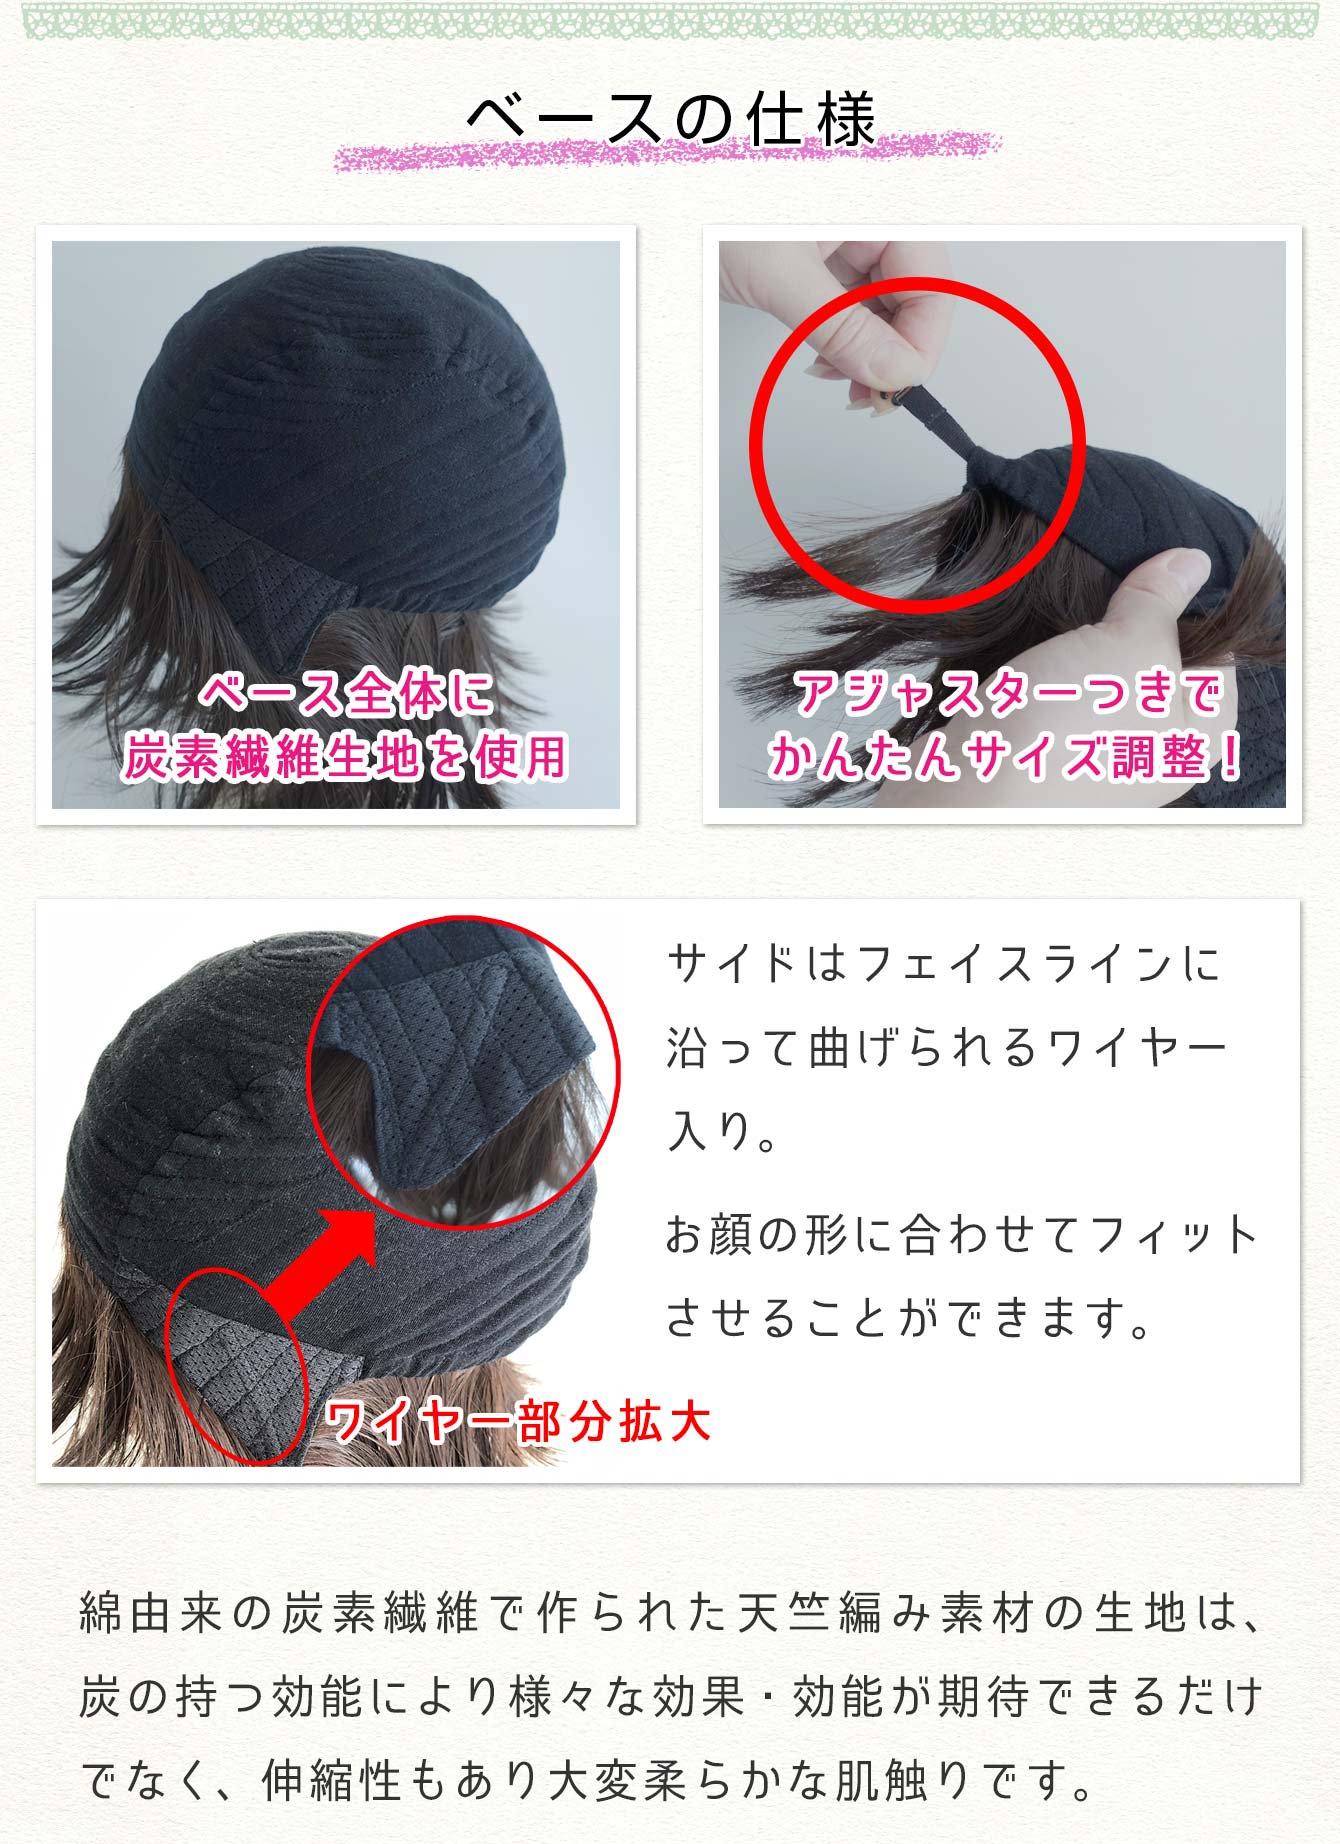 [楽らくウィッグ -帽子感覚-] ベースの仕様・綿由来の炭素繊維で作られた天竺編み素材を使用